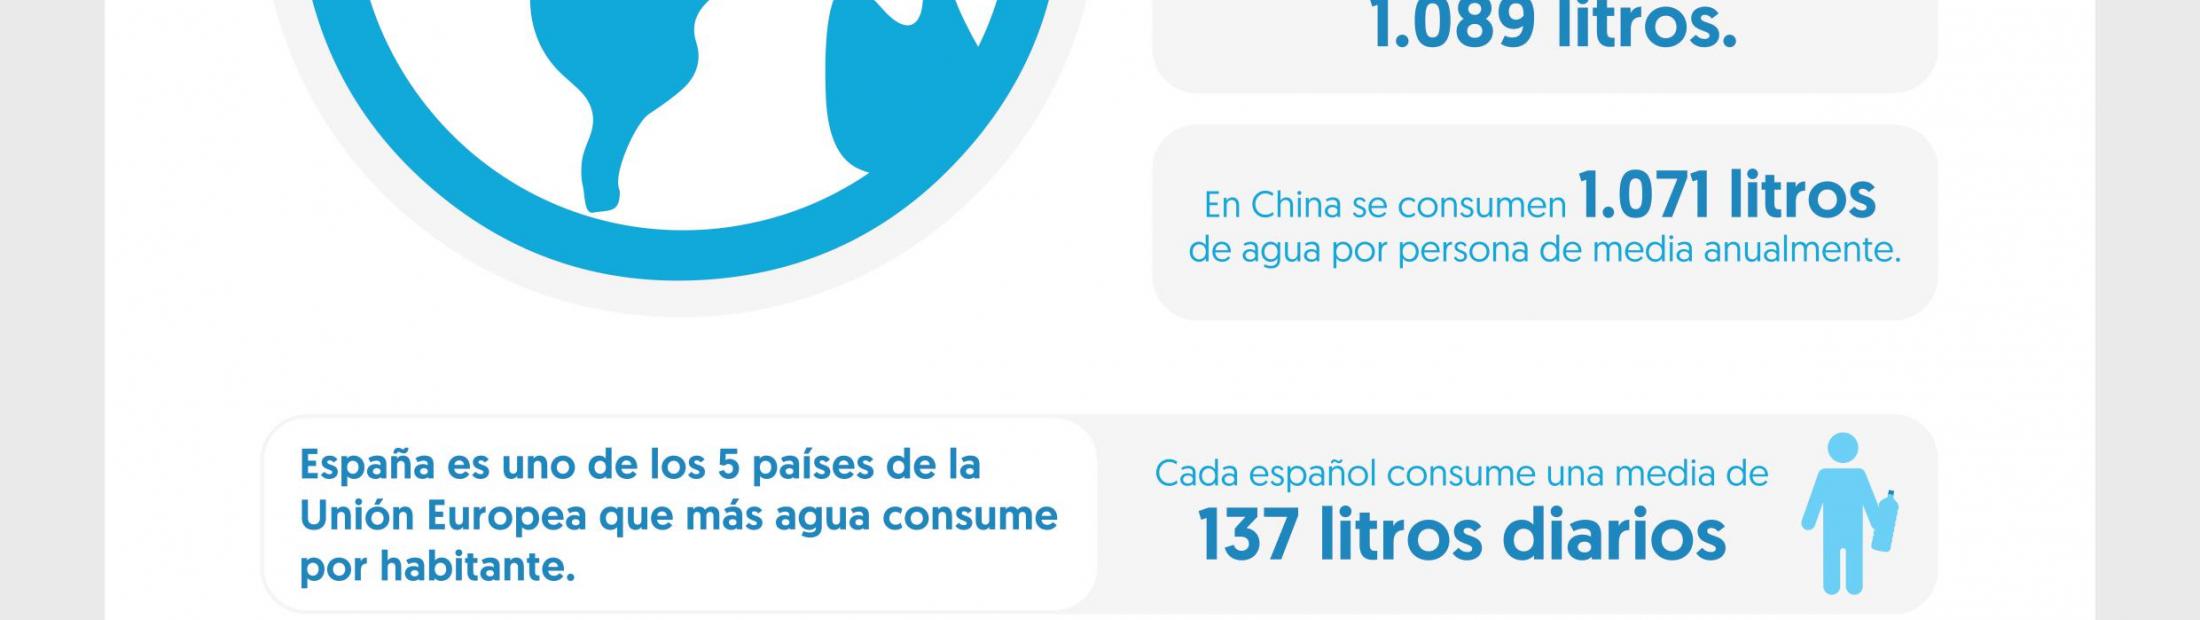 Infografía: Consumo responsable en España y en los campos de refugiados